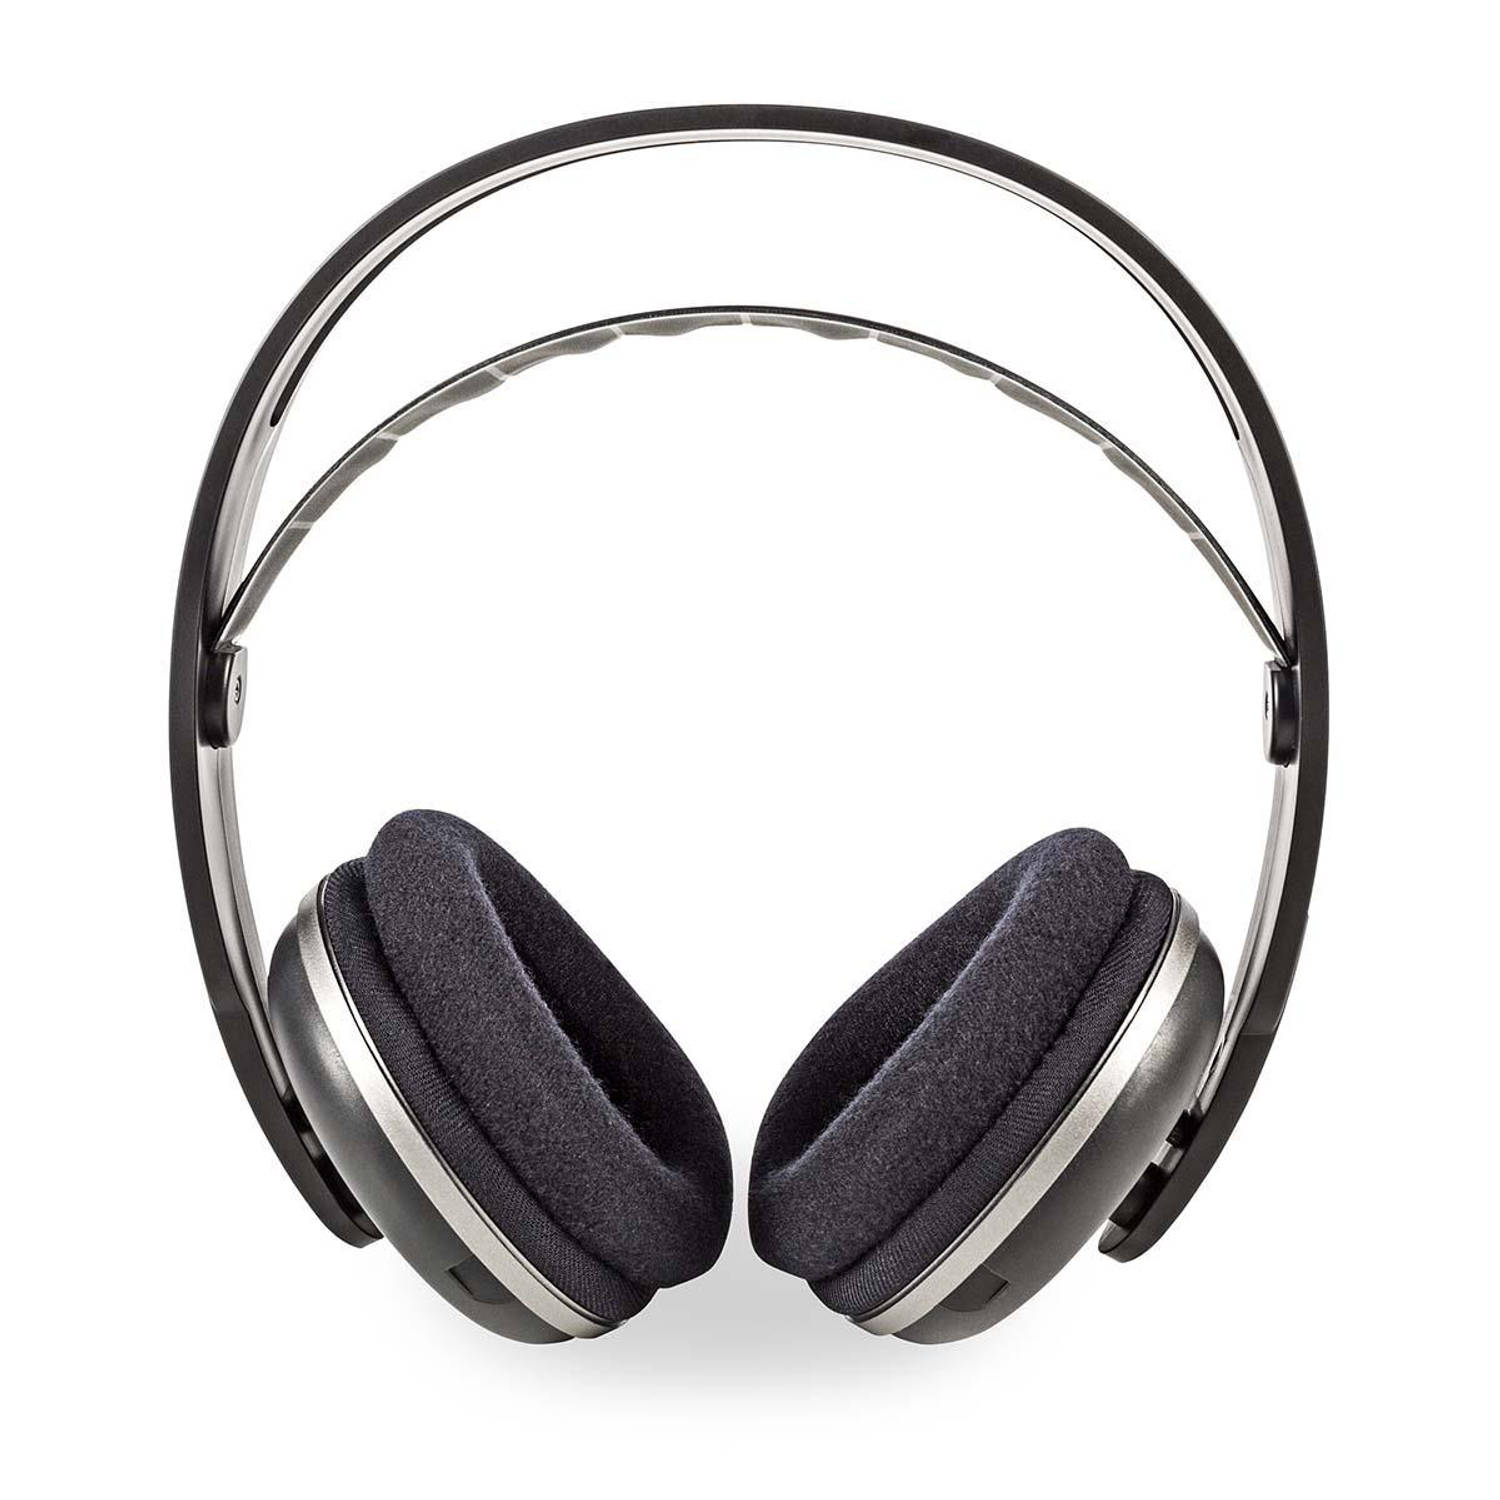 Draadloze hoofdtelefoon radiofrequentie (RF) Over-Ear oplaadstation zwart-zilver